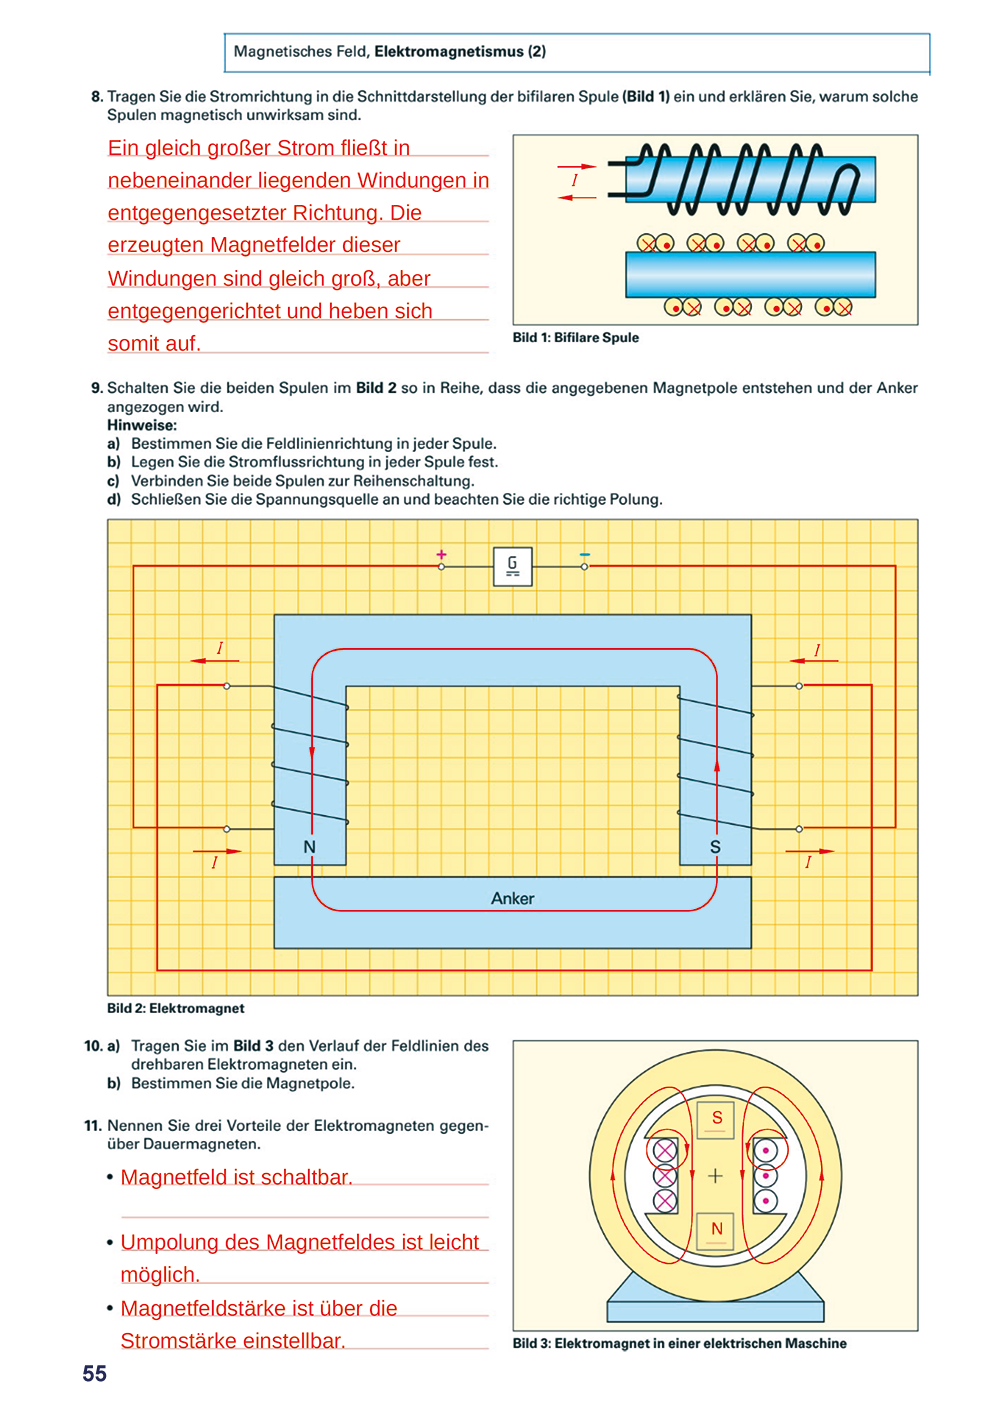 Jahresunterweisung für Elektrofachkräfte (EFK) und elektrotechnisch unterwiesene Personen (EuP) -Magnetisches Feld -Elektromagnetismus Teil 2